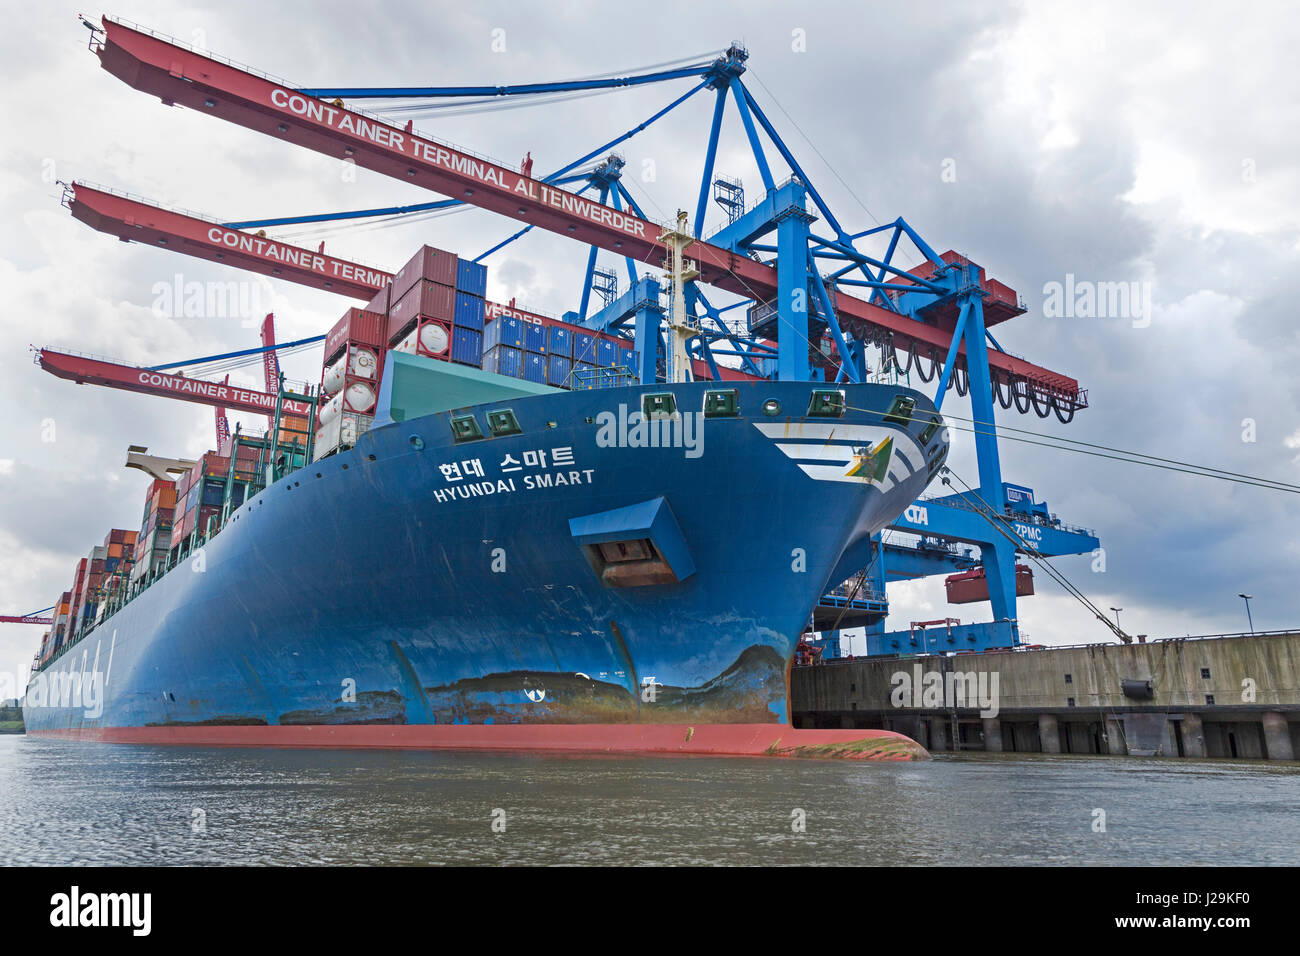 Containerschiff hyundai Smart, Containerterminal Altenwerder, Hamburg Hafen, Hamburg, Deutschland Stockfoto